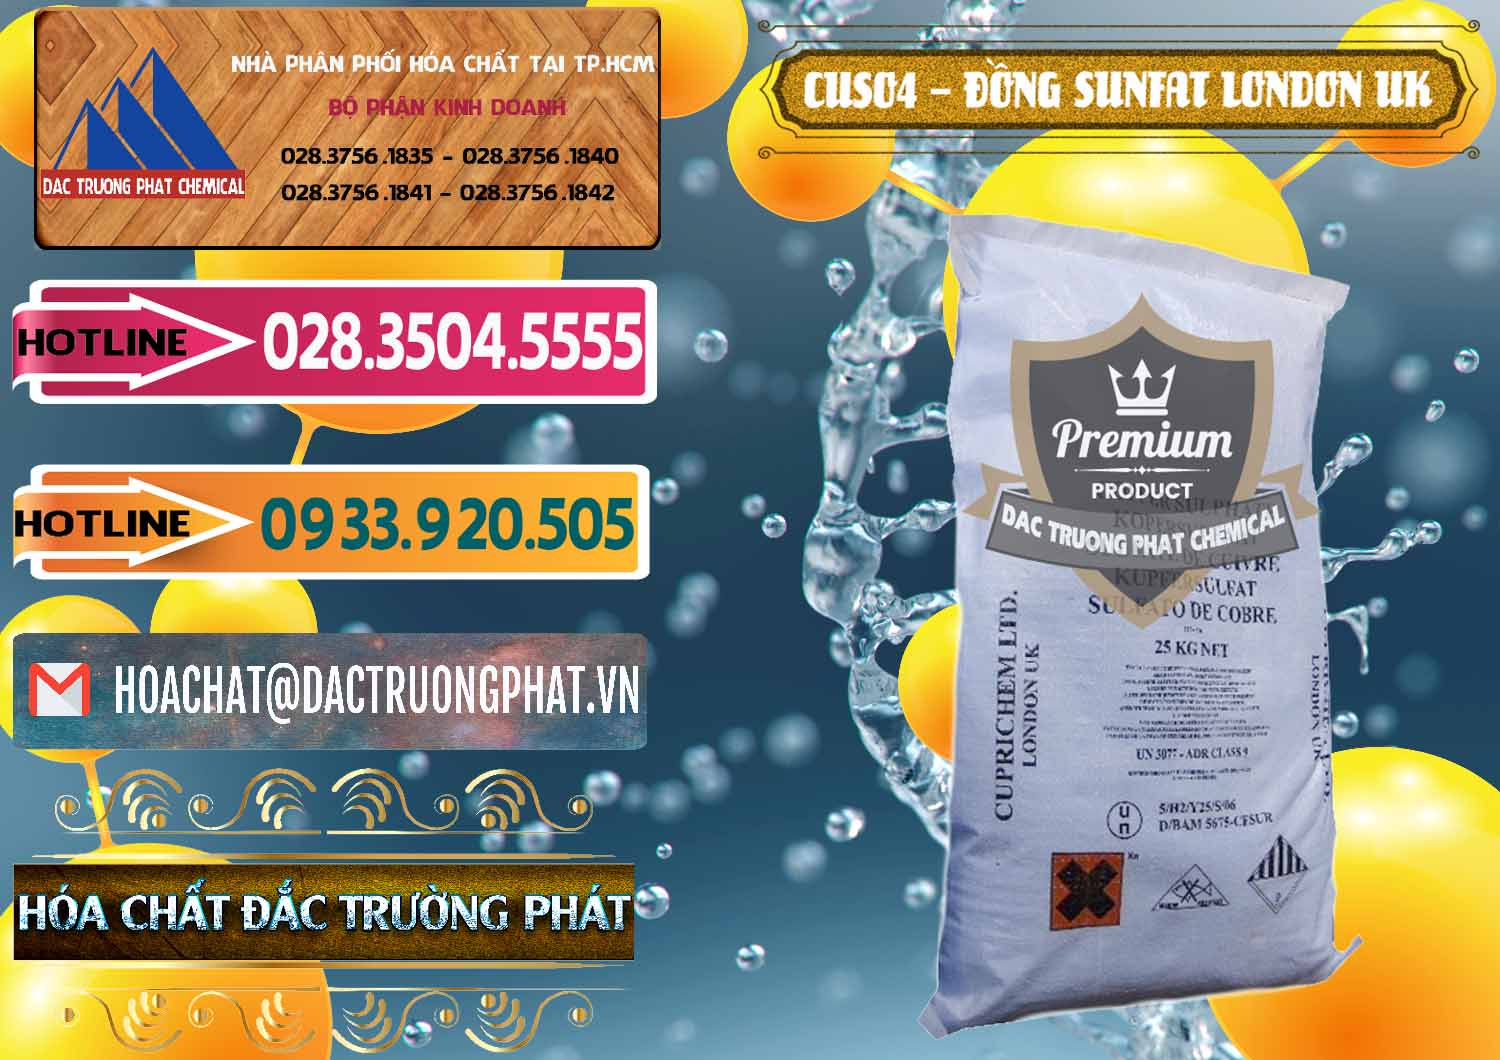 Cty bán và phân phối CuSO4 – Đồng Sunfat Anh Uk Kingdoms - 0478 - Công ty chuyên cung cấp và nhập khẩu hóa chất tại TP.HCM - dactruongphat.vn